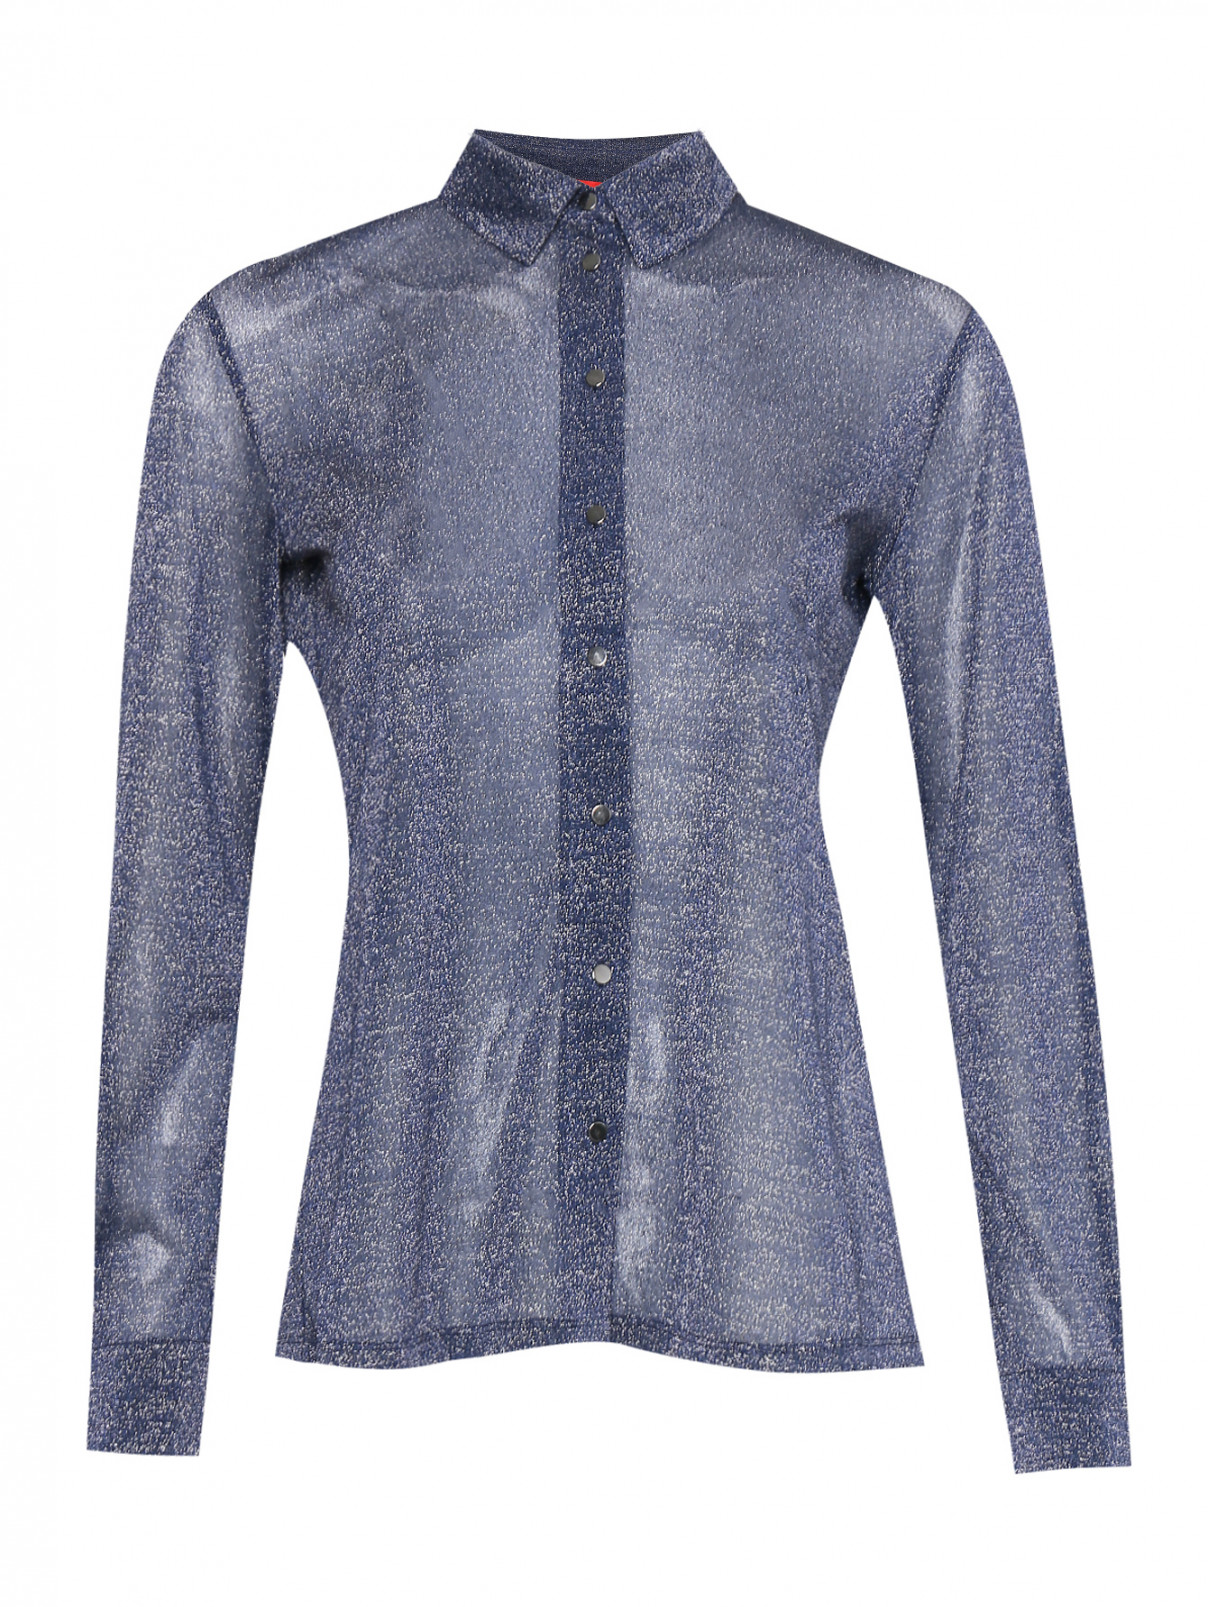 Полупрозрачная блуза из люрекса Max&Co  –  Общий вид  – Цвет:  Синий